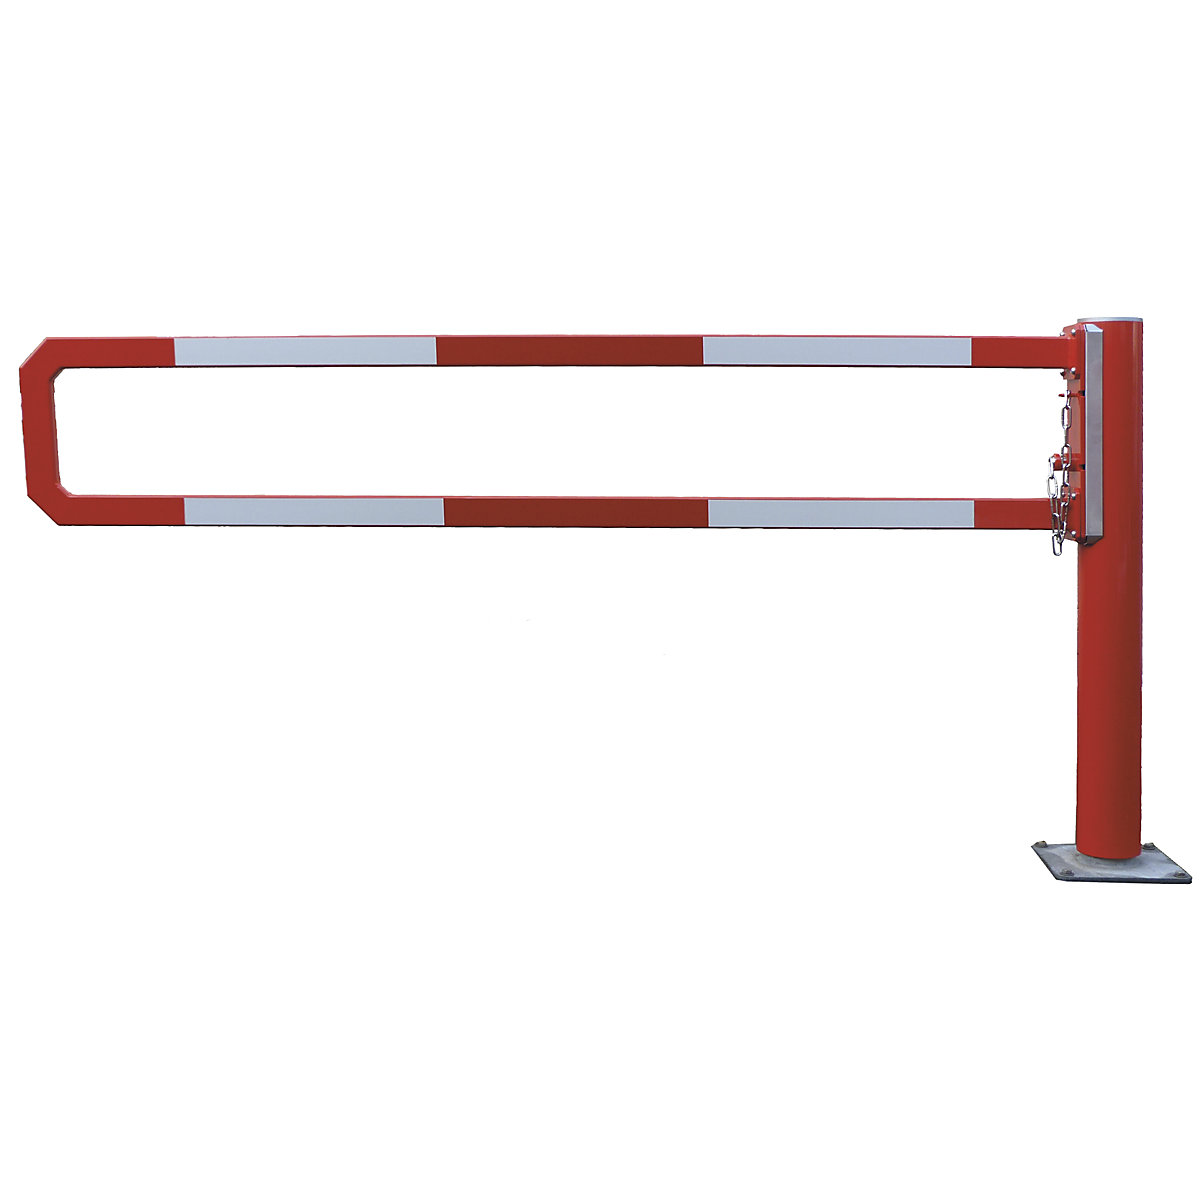 Mannus – Sbarramento girevole, lunghezza sbarra 1,5 m, zincatura a fuoco, verniciatura a polvere aggiuntiva in rosso